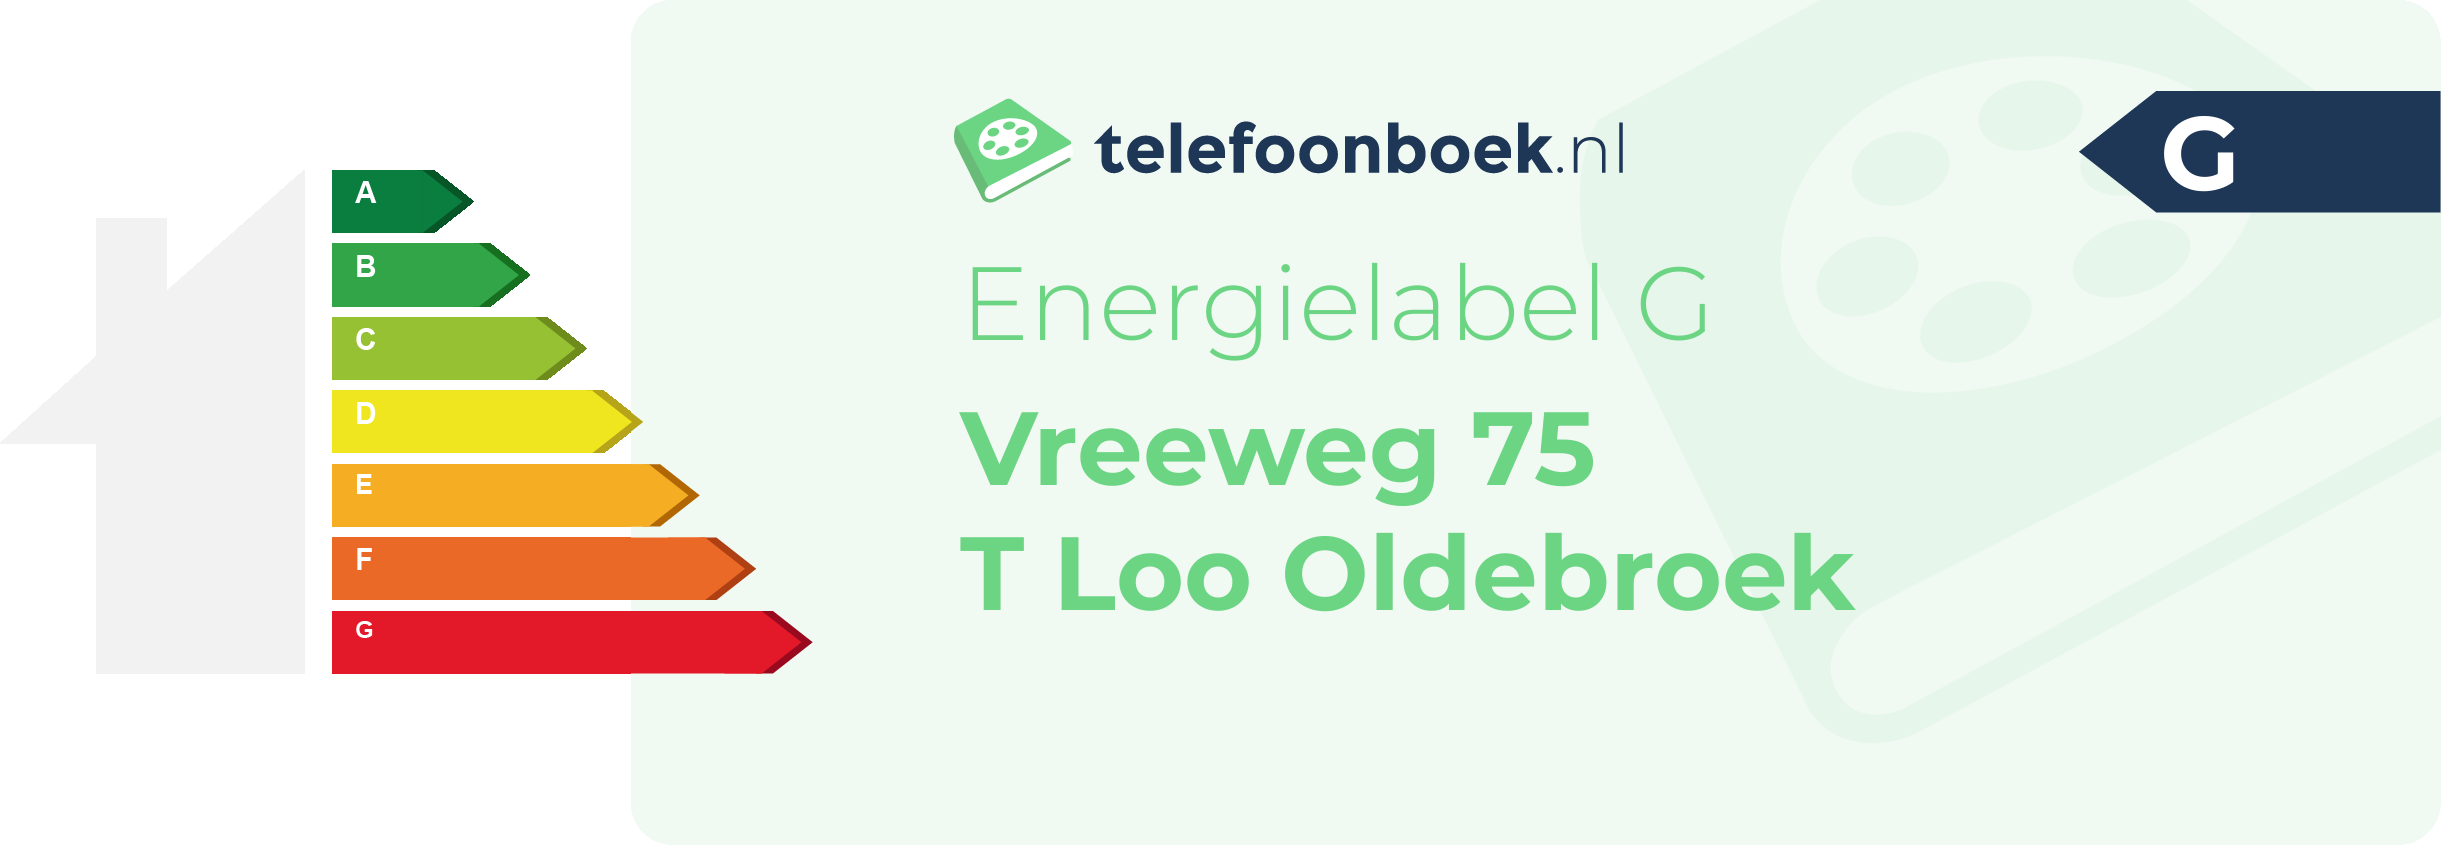 Energielabel Vreeweg 75 T Loo Oldebroek